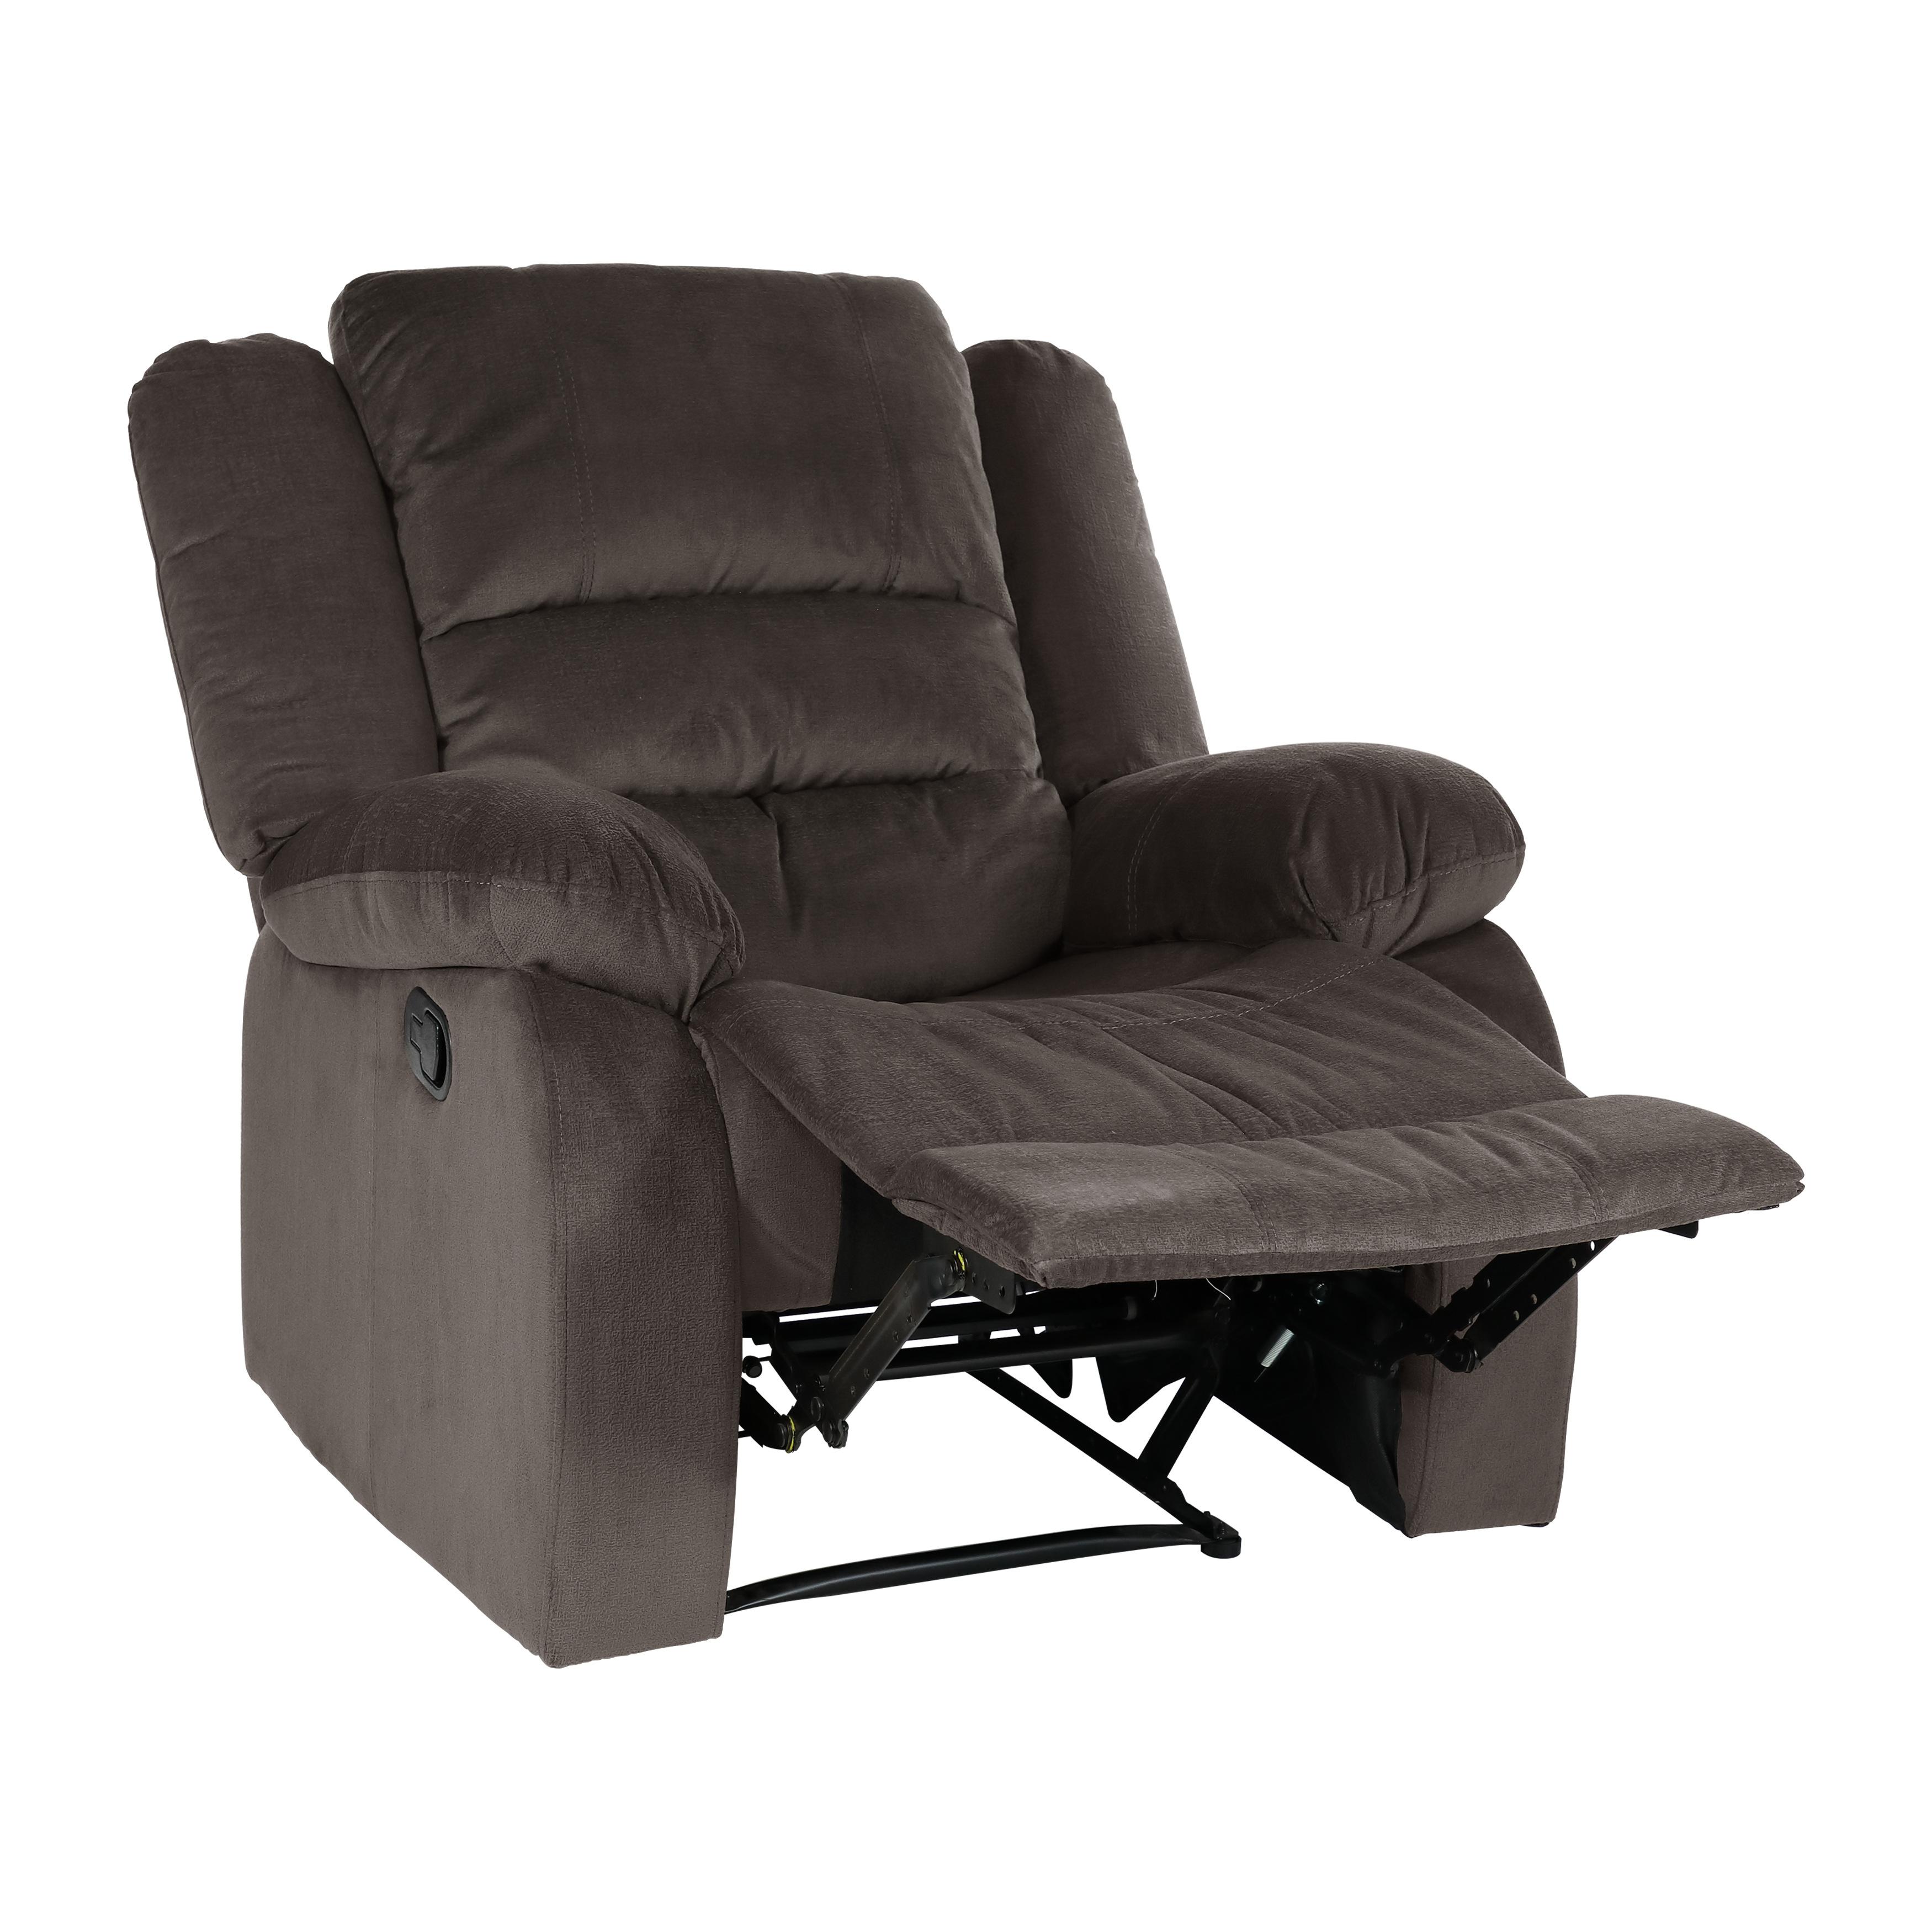 

    
Homelegance Jarita Chair 8329CH-1-C Reclining Chair Chocolate 8329CH-1-C
